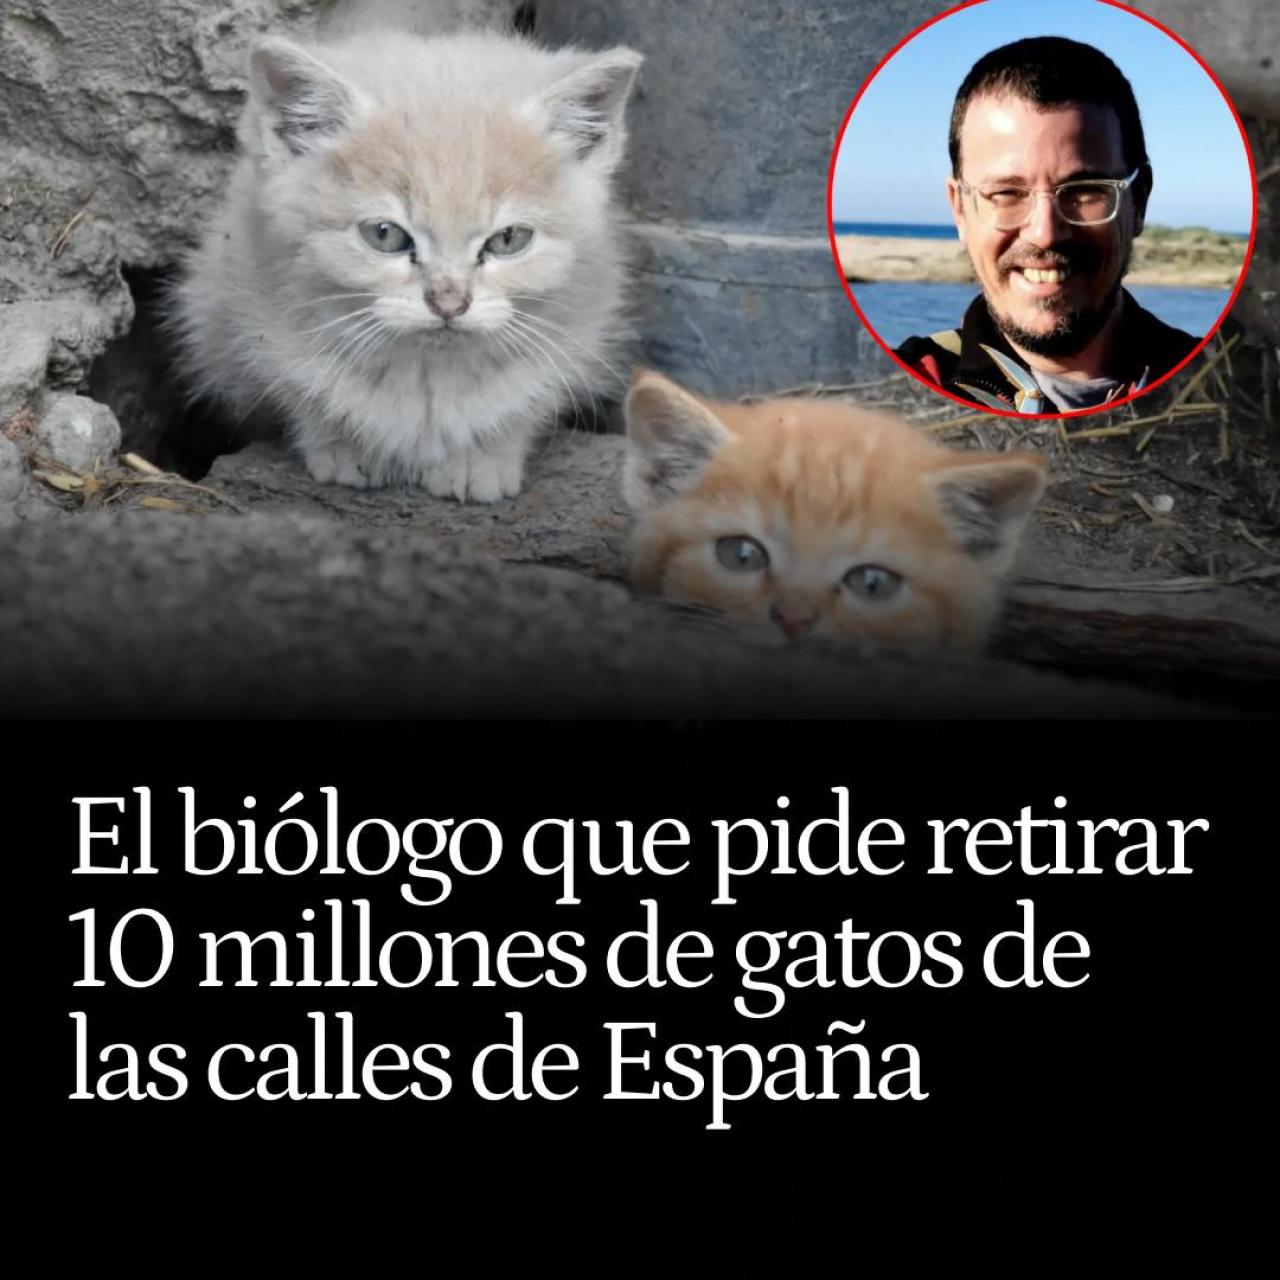 El biólogo que pide retirar 10 millones de gatos de las calles de España: "Causan una depredación enorme"